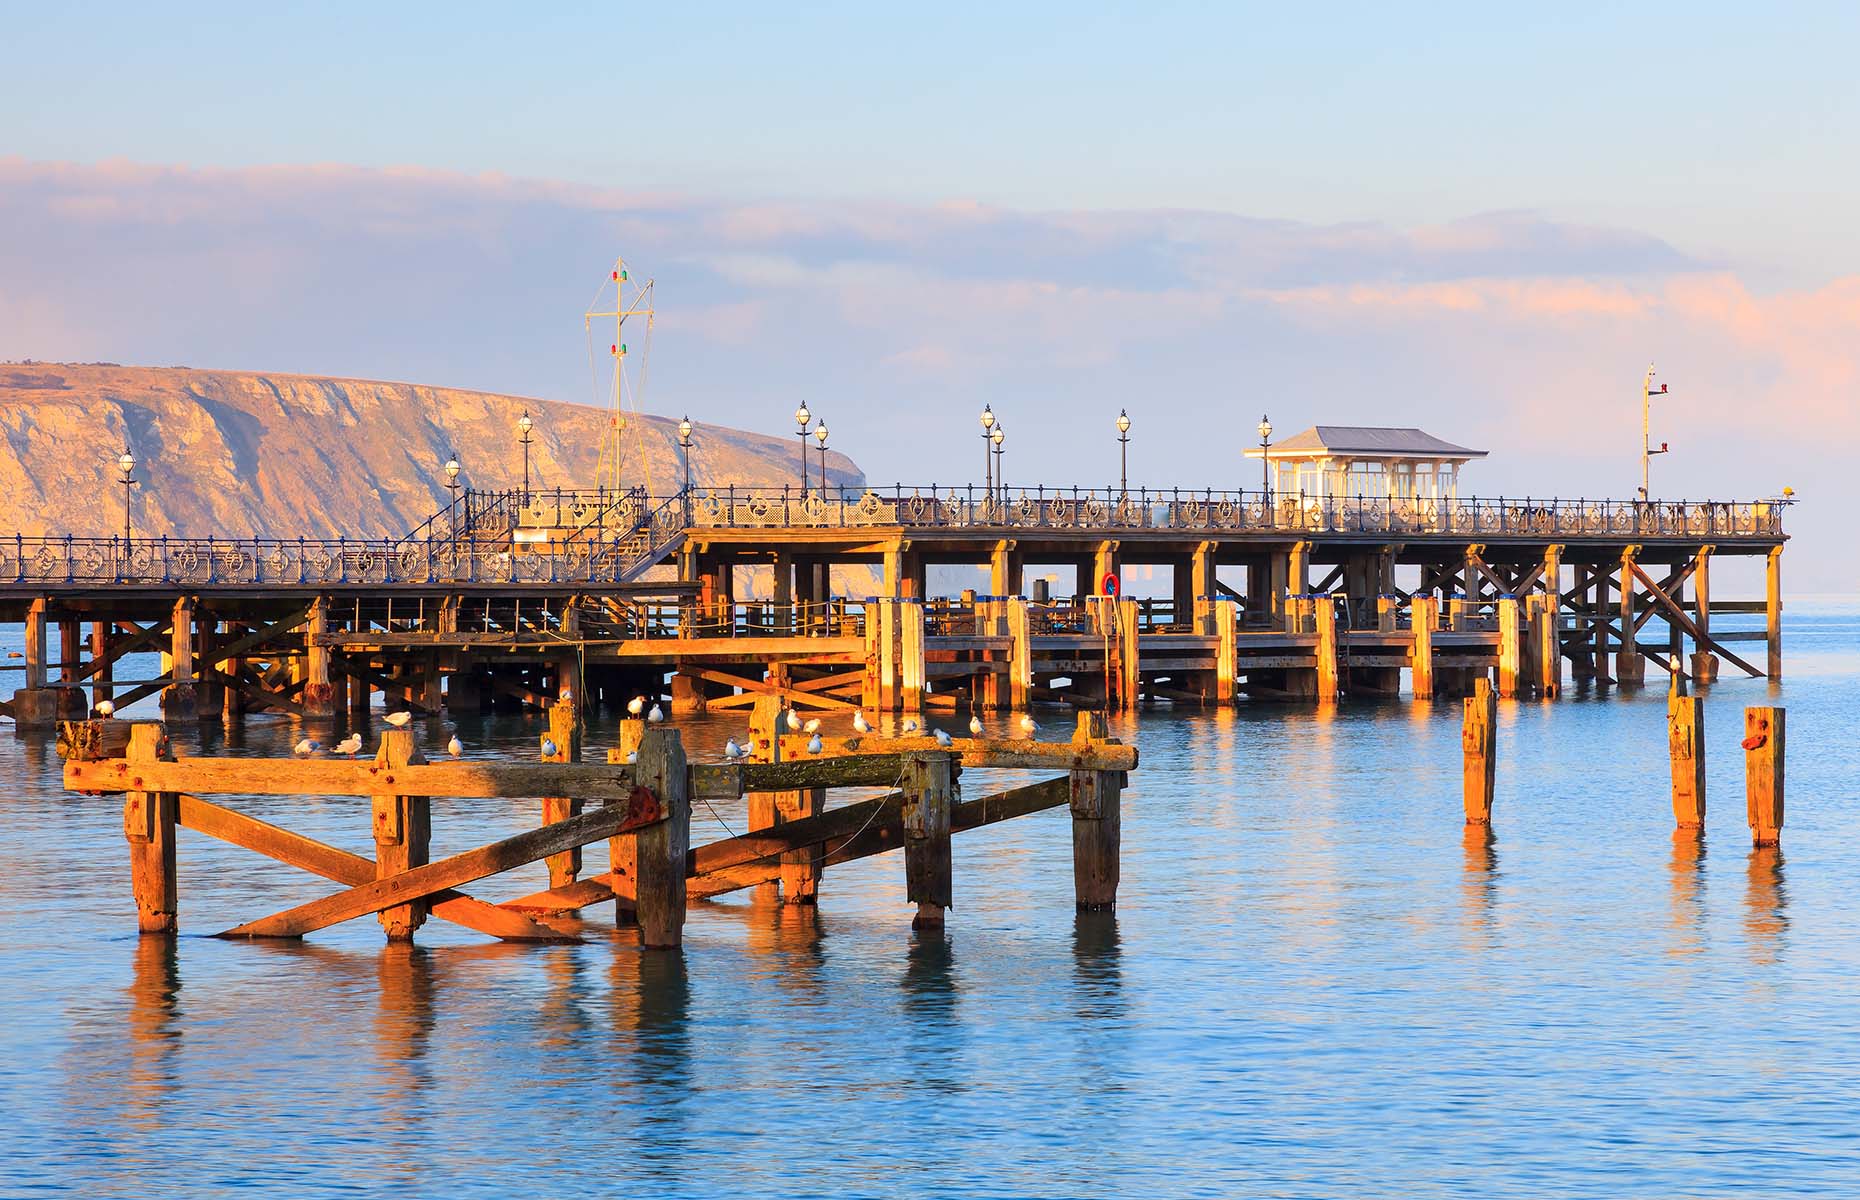 Swanage Pier (Image: ian woolcock/Shutterstock)